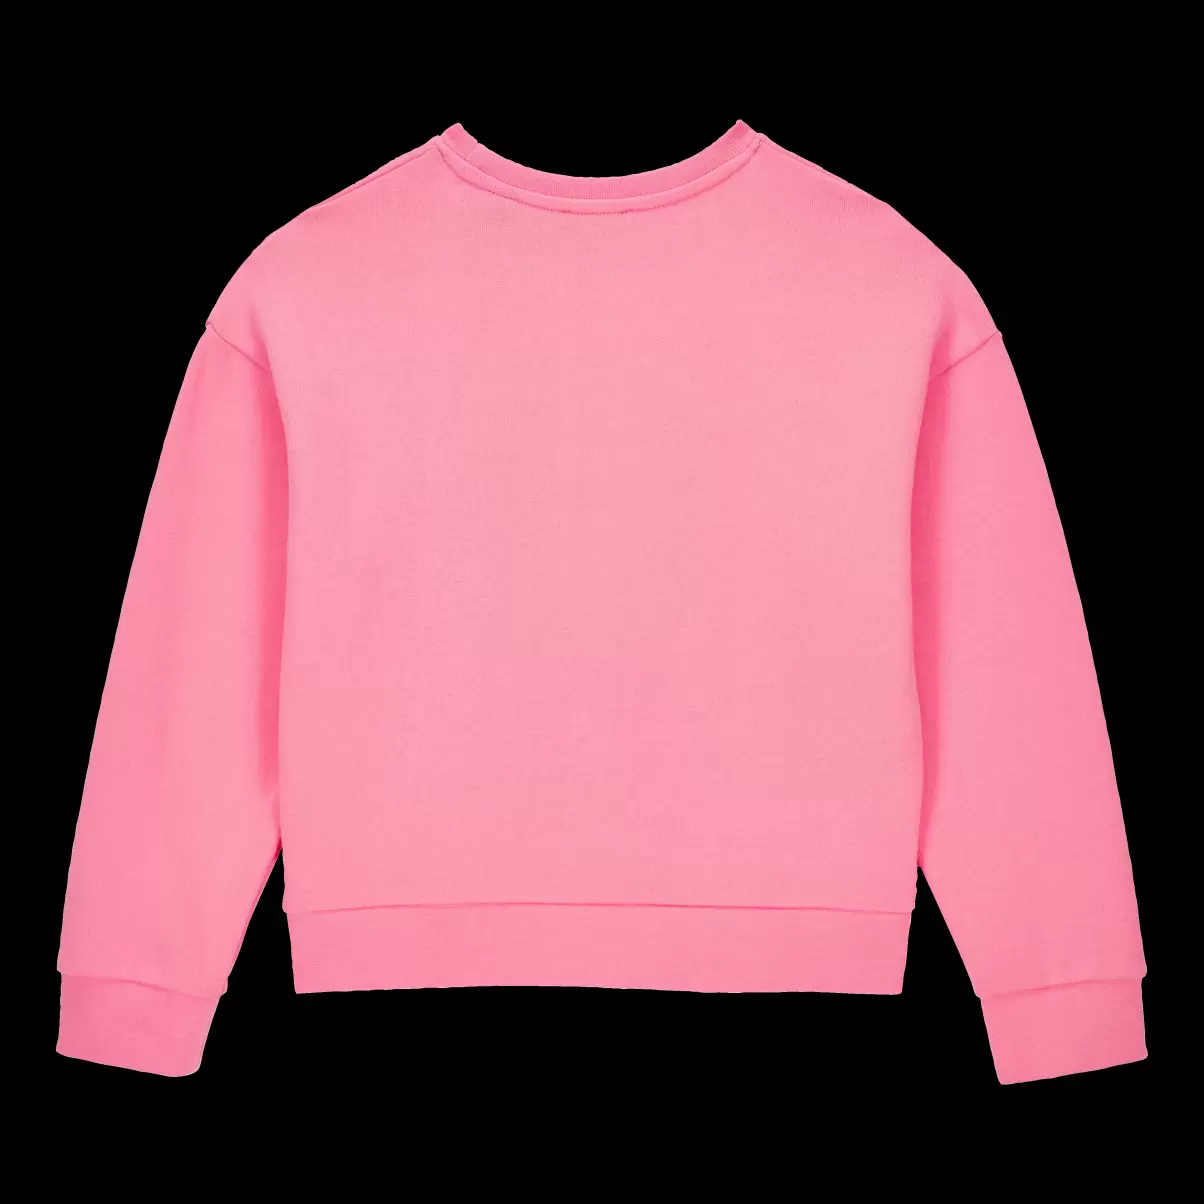 Vilebrequin Provencal Turtle Sweatshirt Mit Rundhalsausschnitt Für Mädchen Kosten Bonbon / Rosa Mädchen Sweatshirts - 3